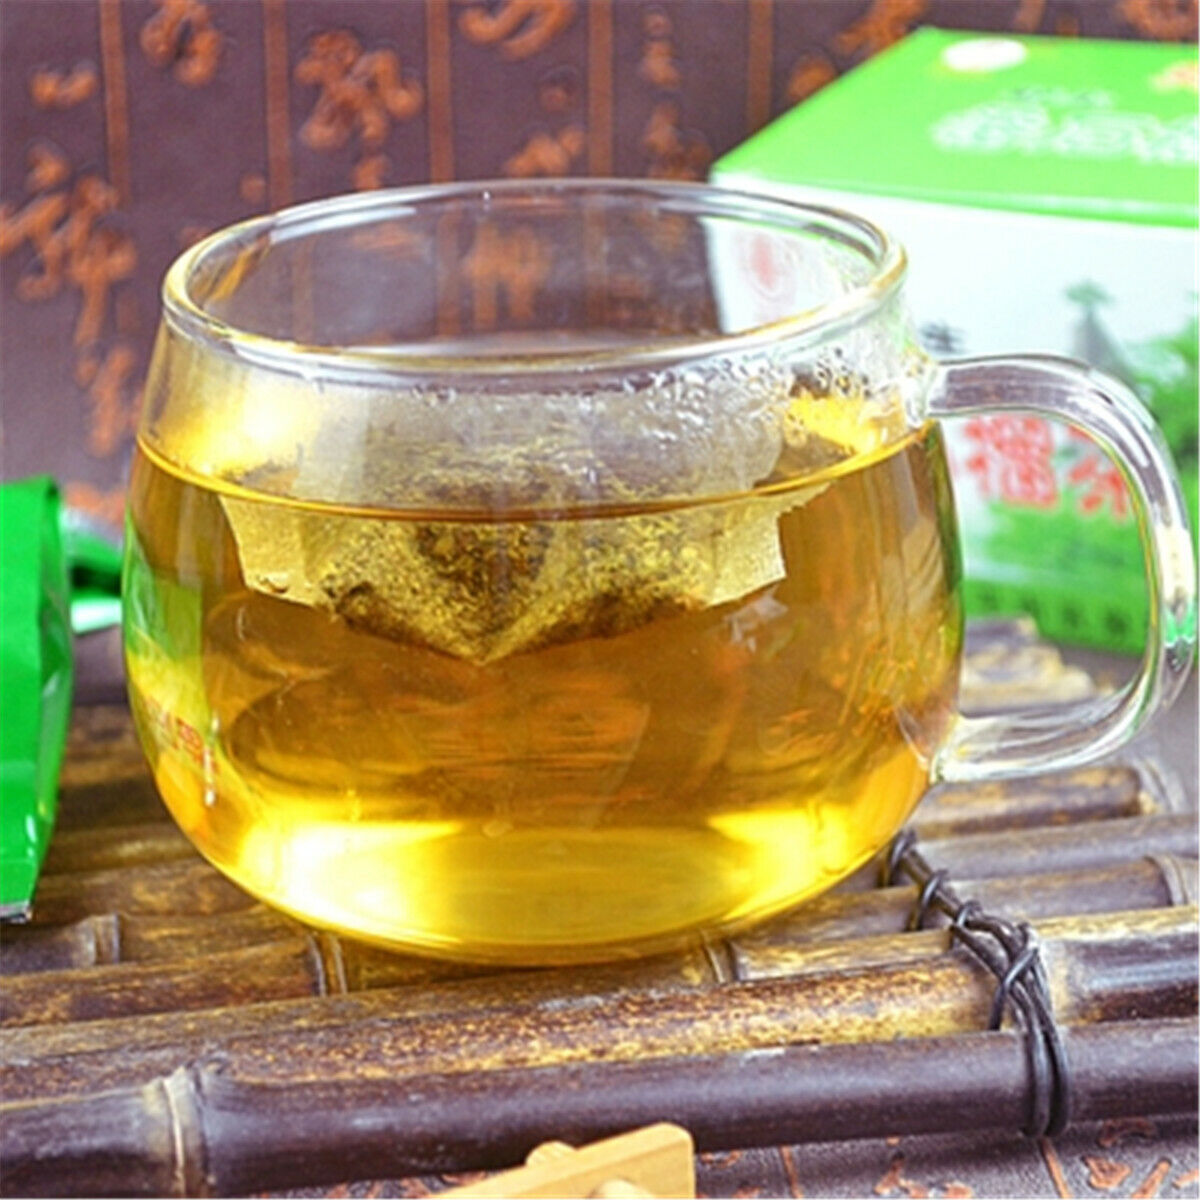 Herbal Tea Tea Bags Organic Green Tea China Tea 100%Natural Guava Leaves Tea 40g